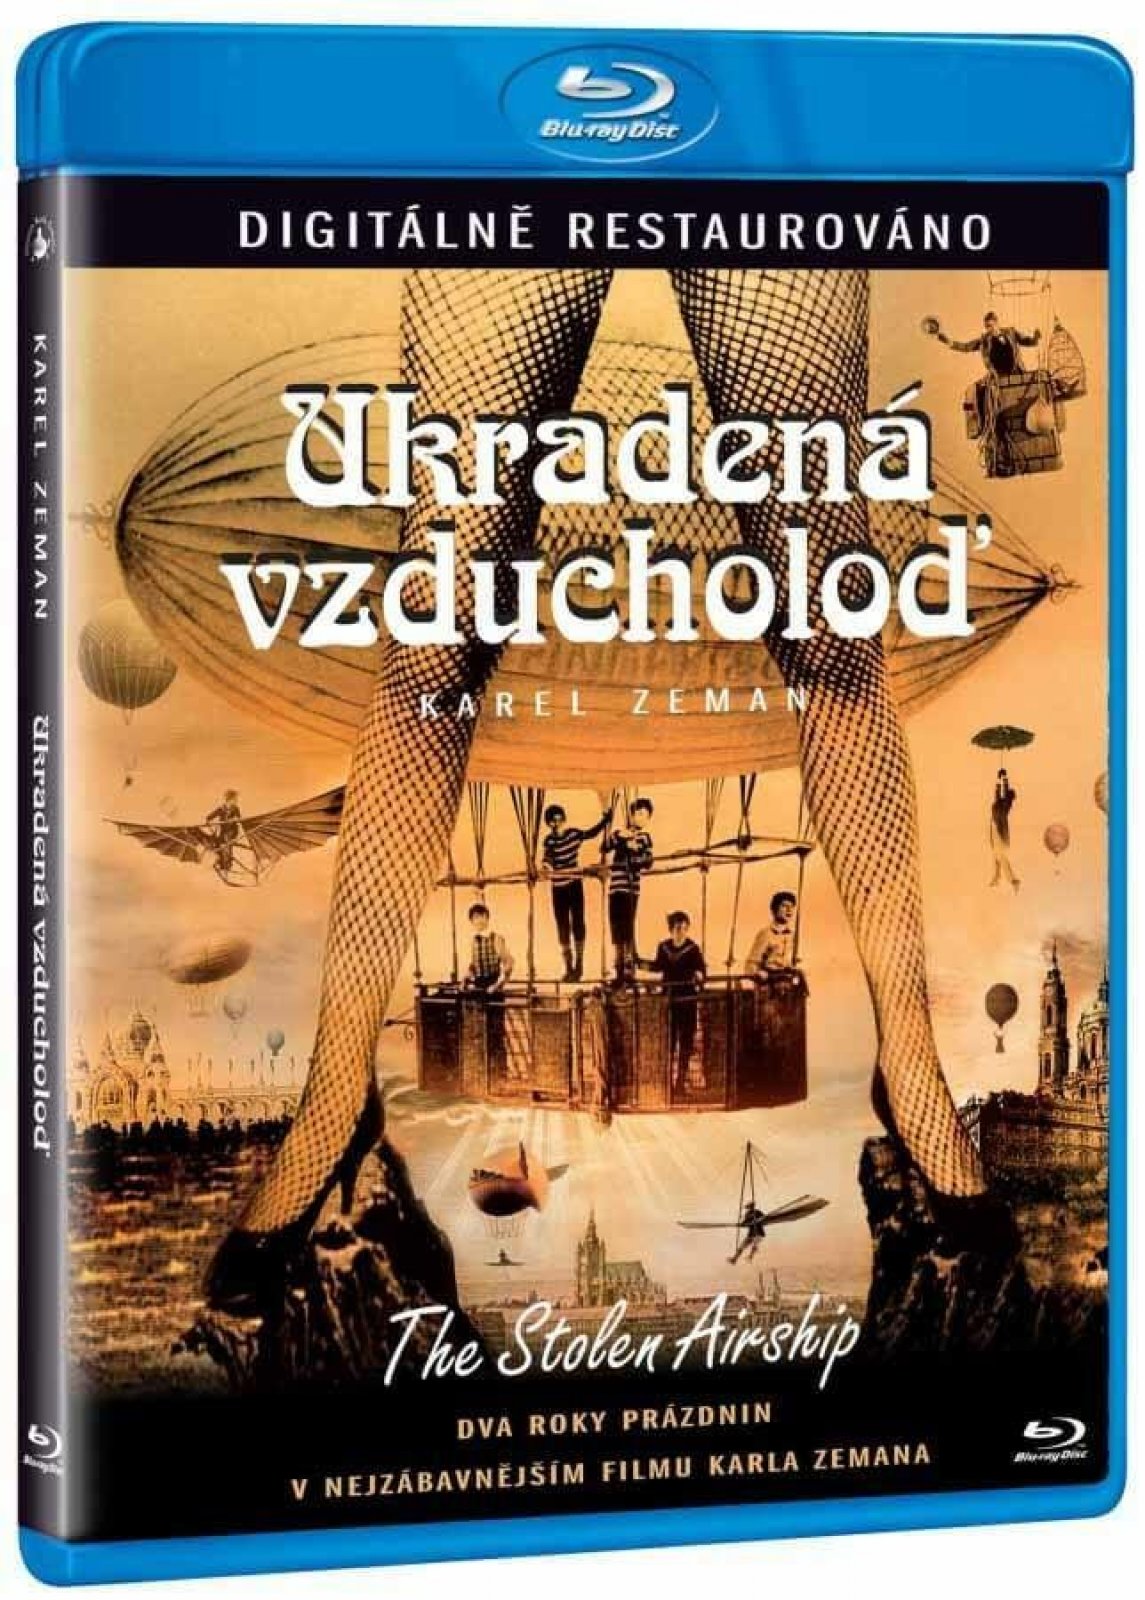 The Stolen Starship / Ukradena vzducholod Remastered Blu-Ray